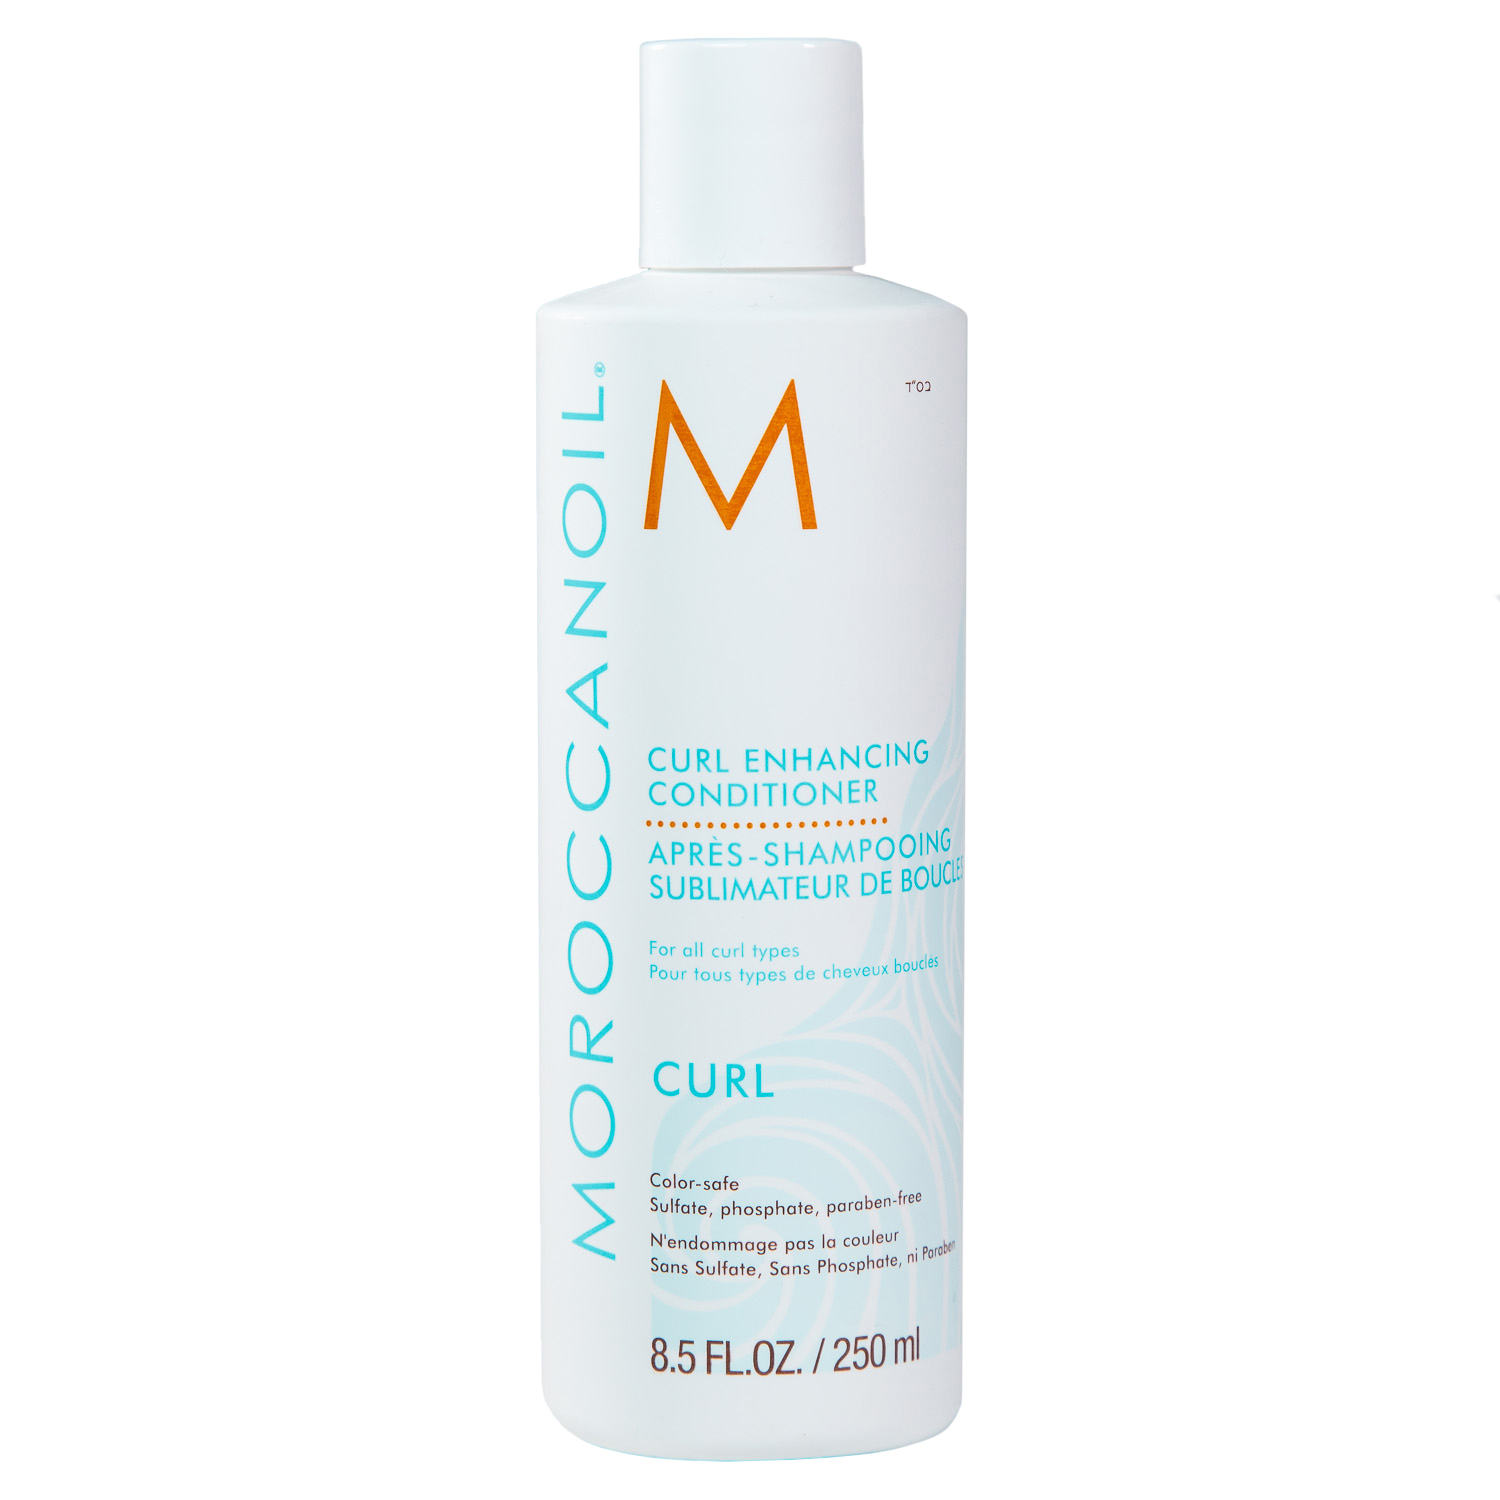 Moroccanoil Кондиционер для вьющихся волос Enhancing Conditioner, 250 мл (Moroccanoil, Curl) кондиционер для вьющихся волос moroccanoil 1л